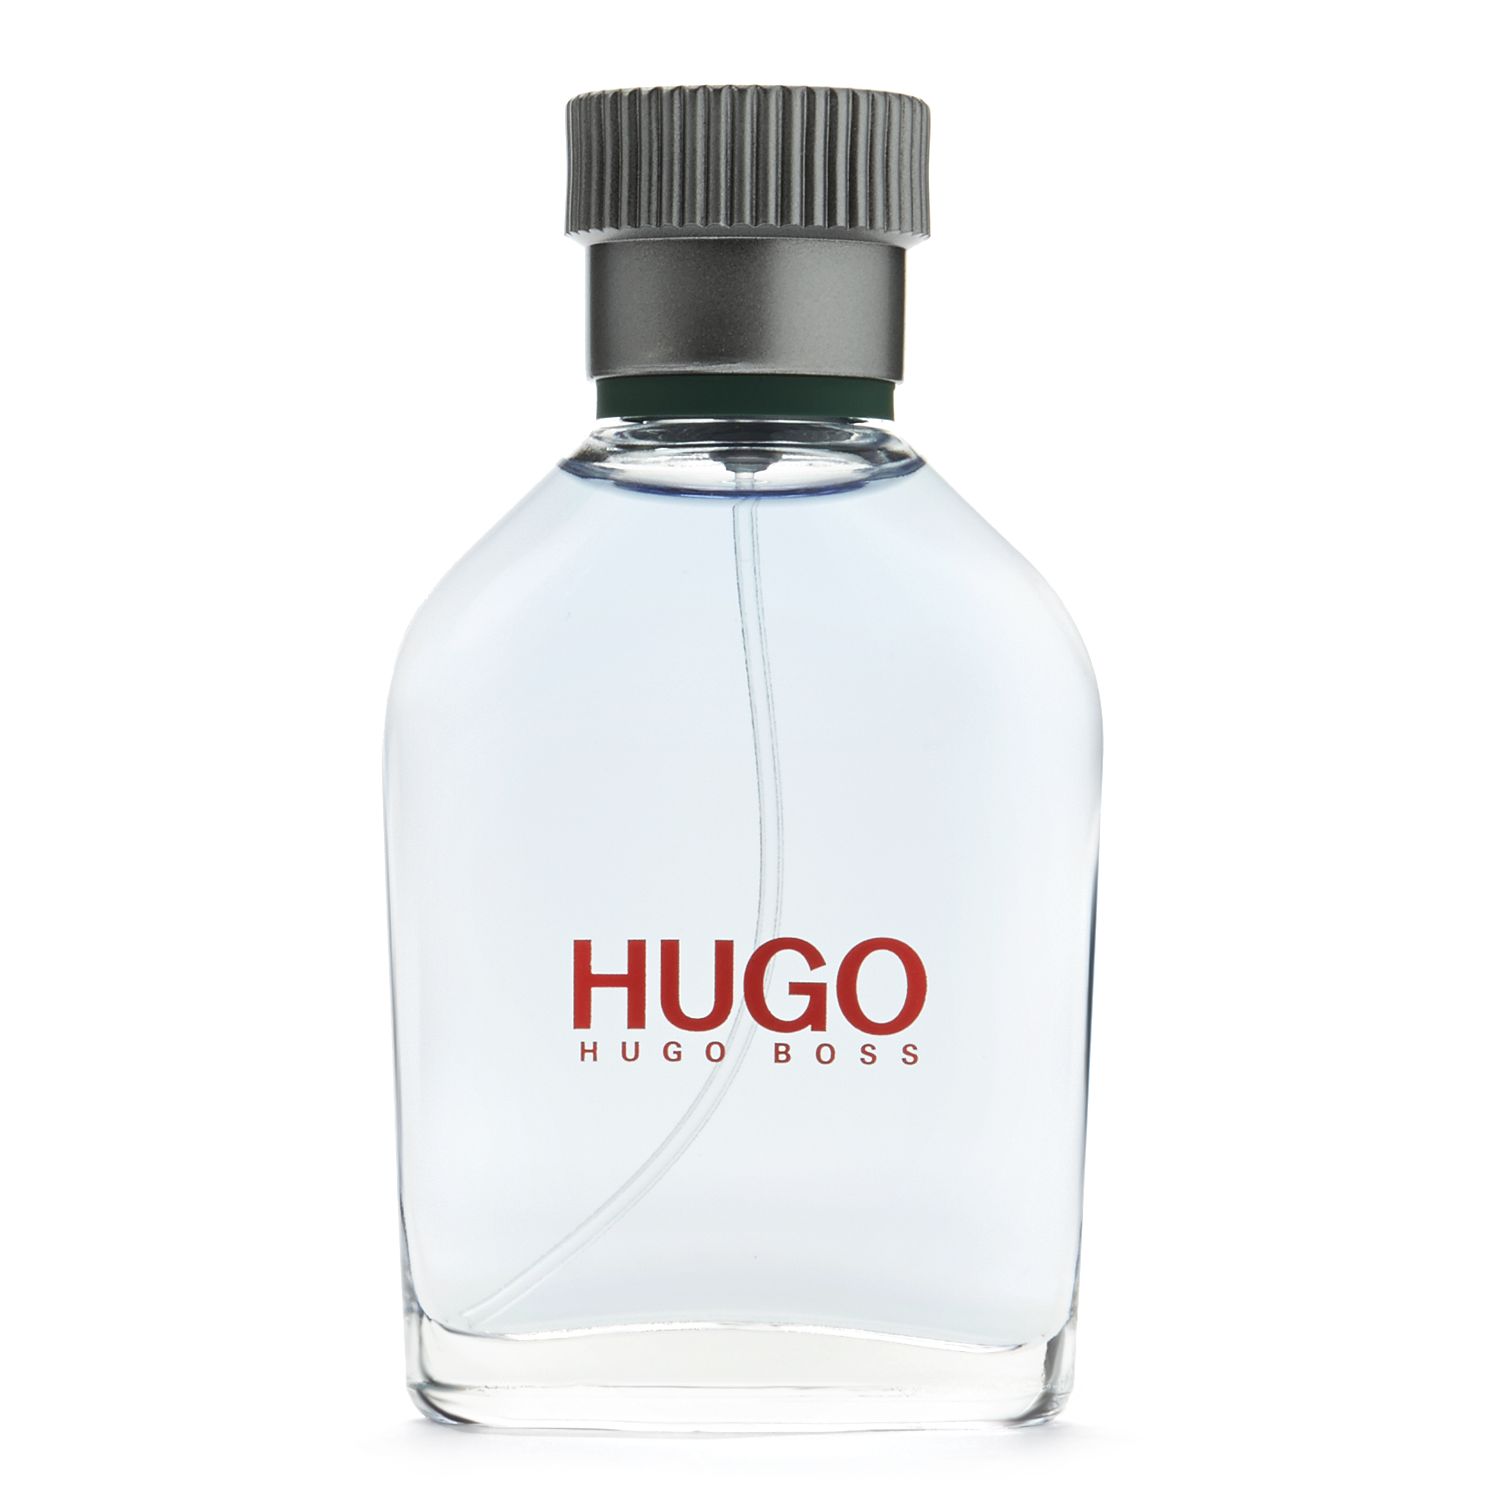 Hugo Man by HUGO BOSS Men's Cologne 